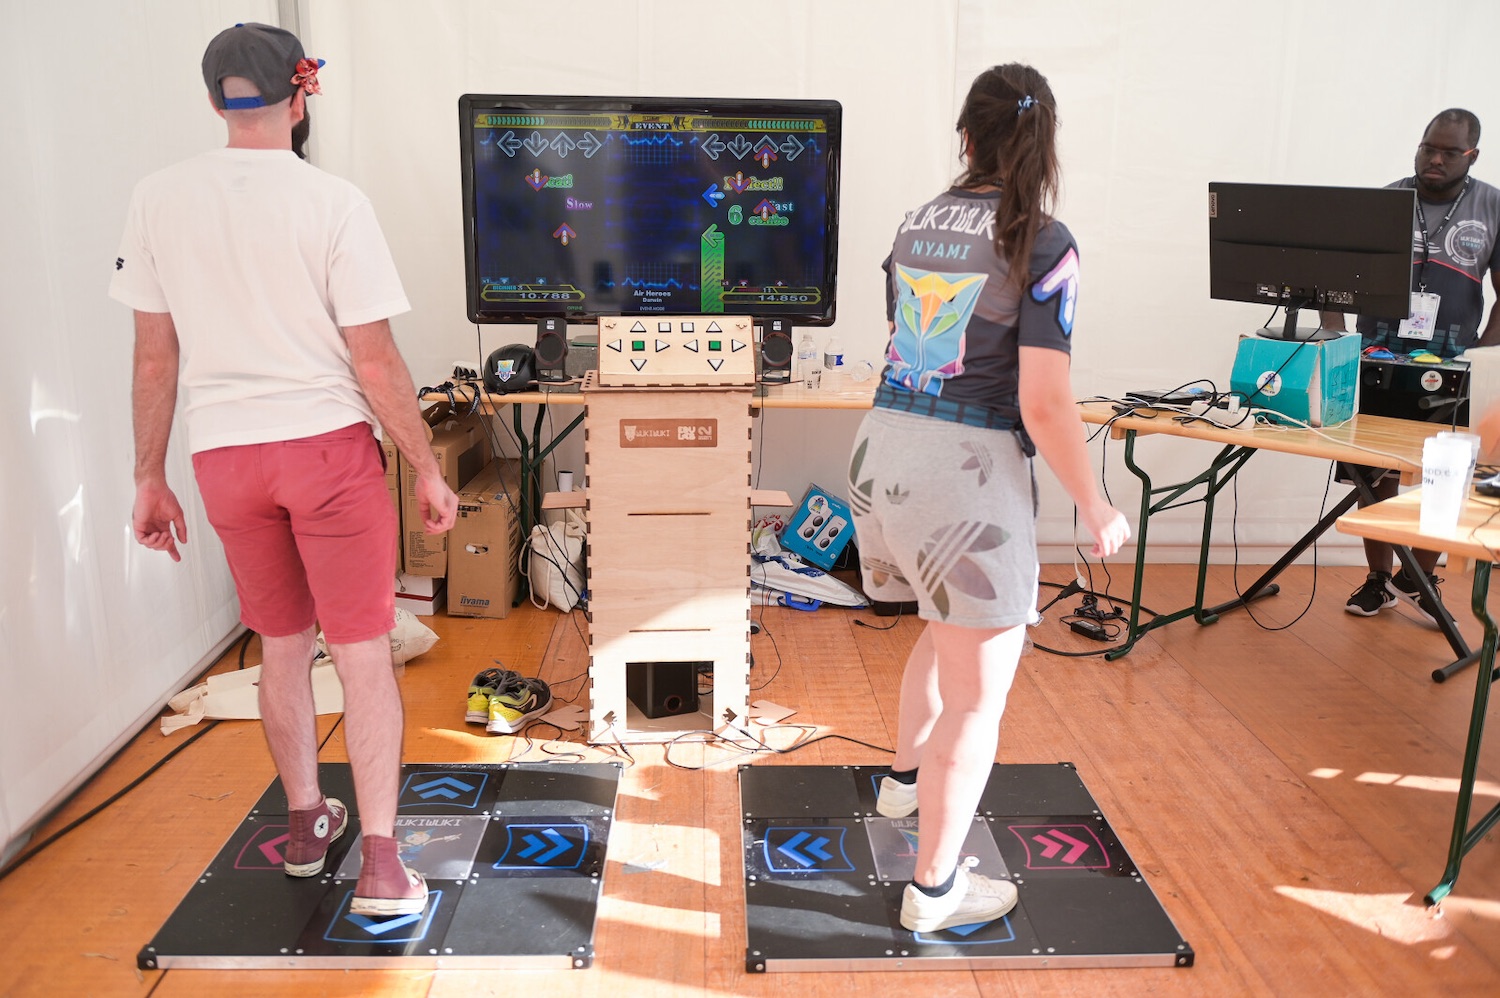 Le festival Stunfest est l'occasion de tester des jeux vidéos